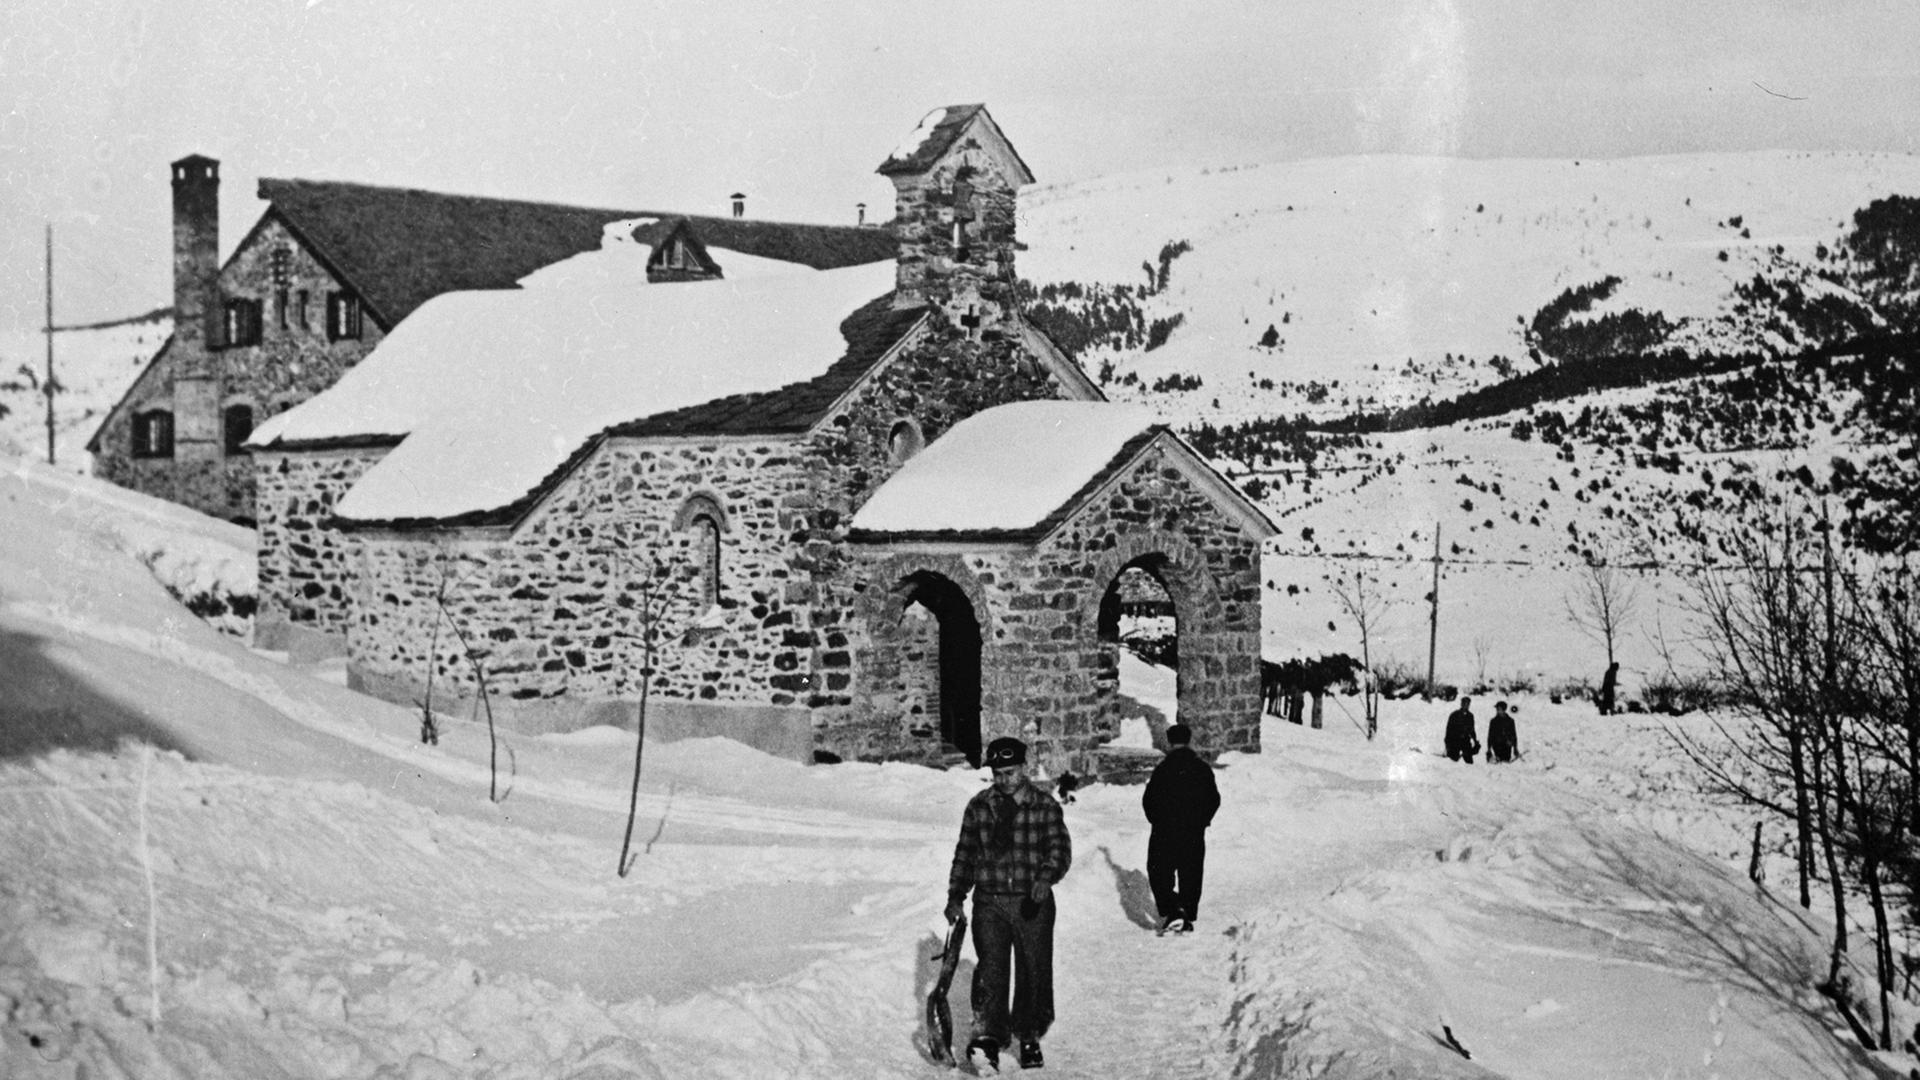 Dezember 1935: Schnee im spanischen Aragon